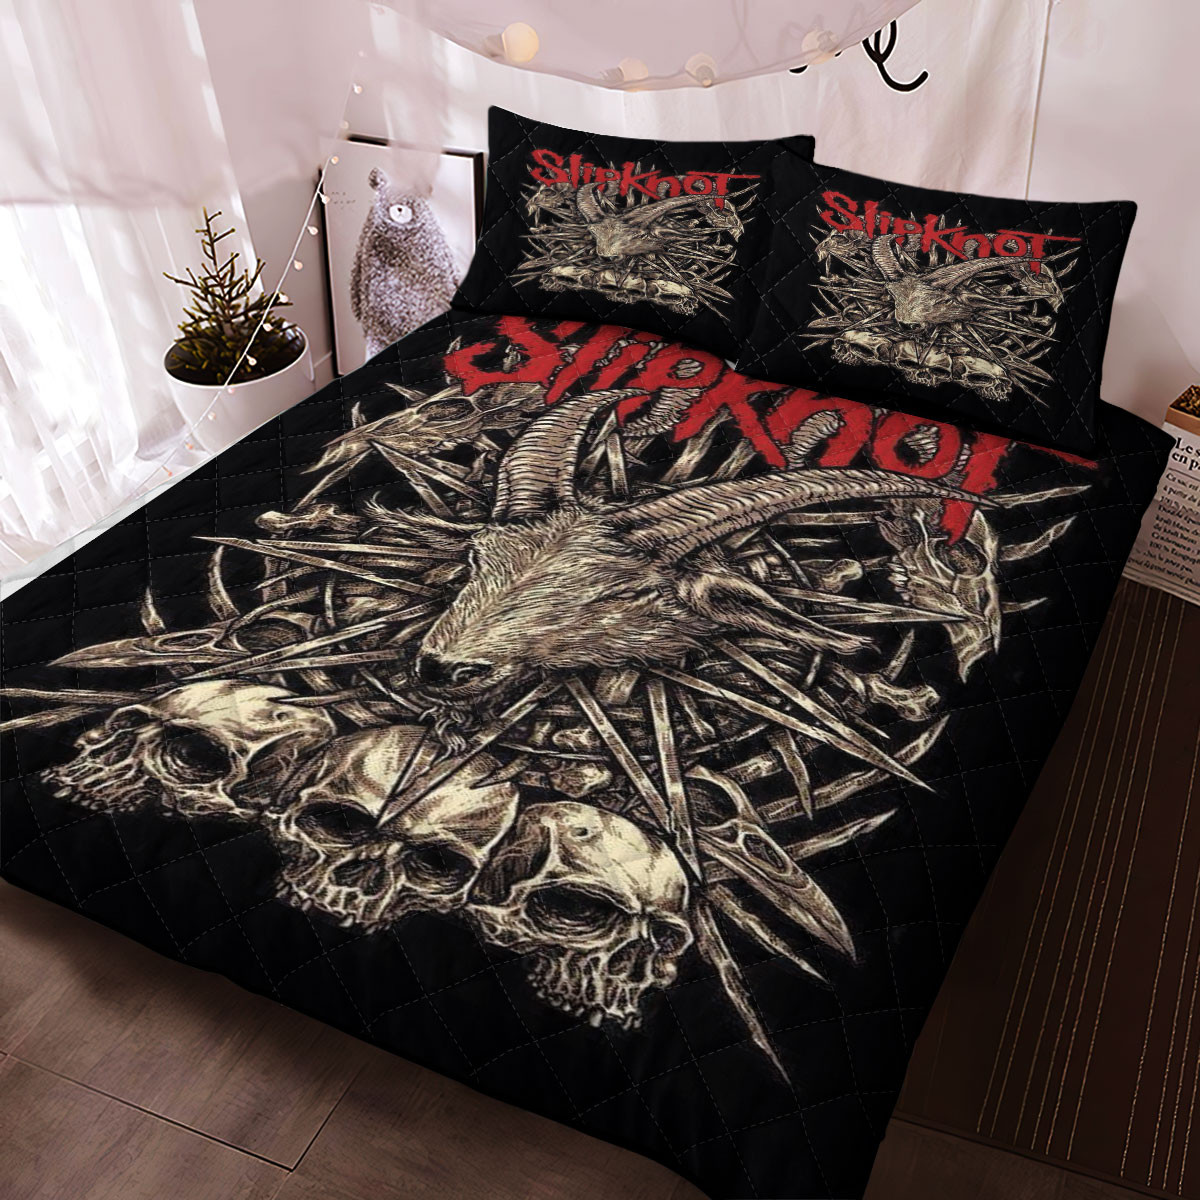 Slipknot Band Christmas 6969 Gift, Slipknot Band Gift For Fan, Slipknot ...